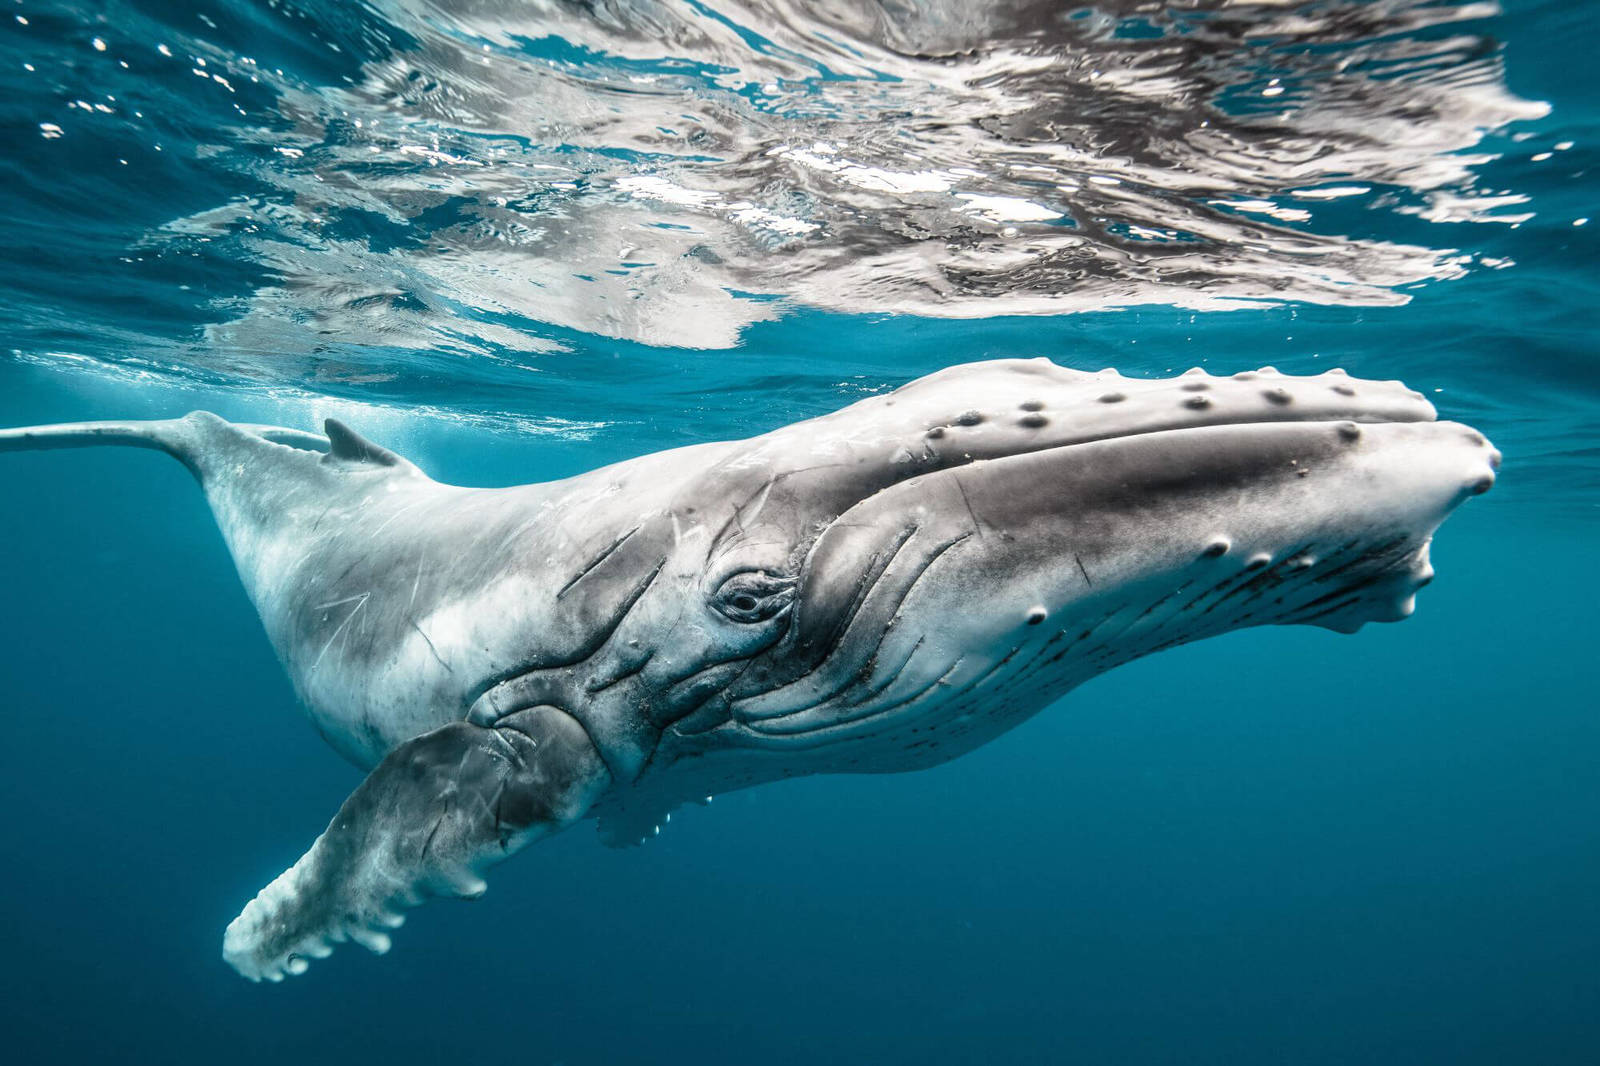 Comme d'énormes baleines peut pas inaperçu grimpent à un grand косякам de poissons?